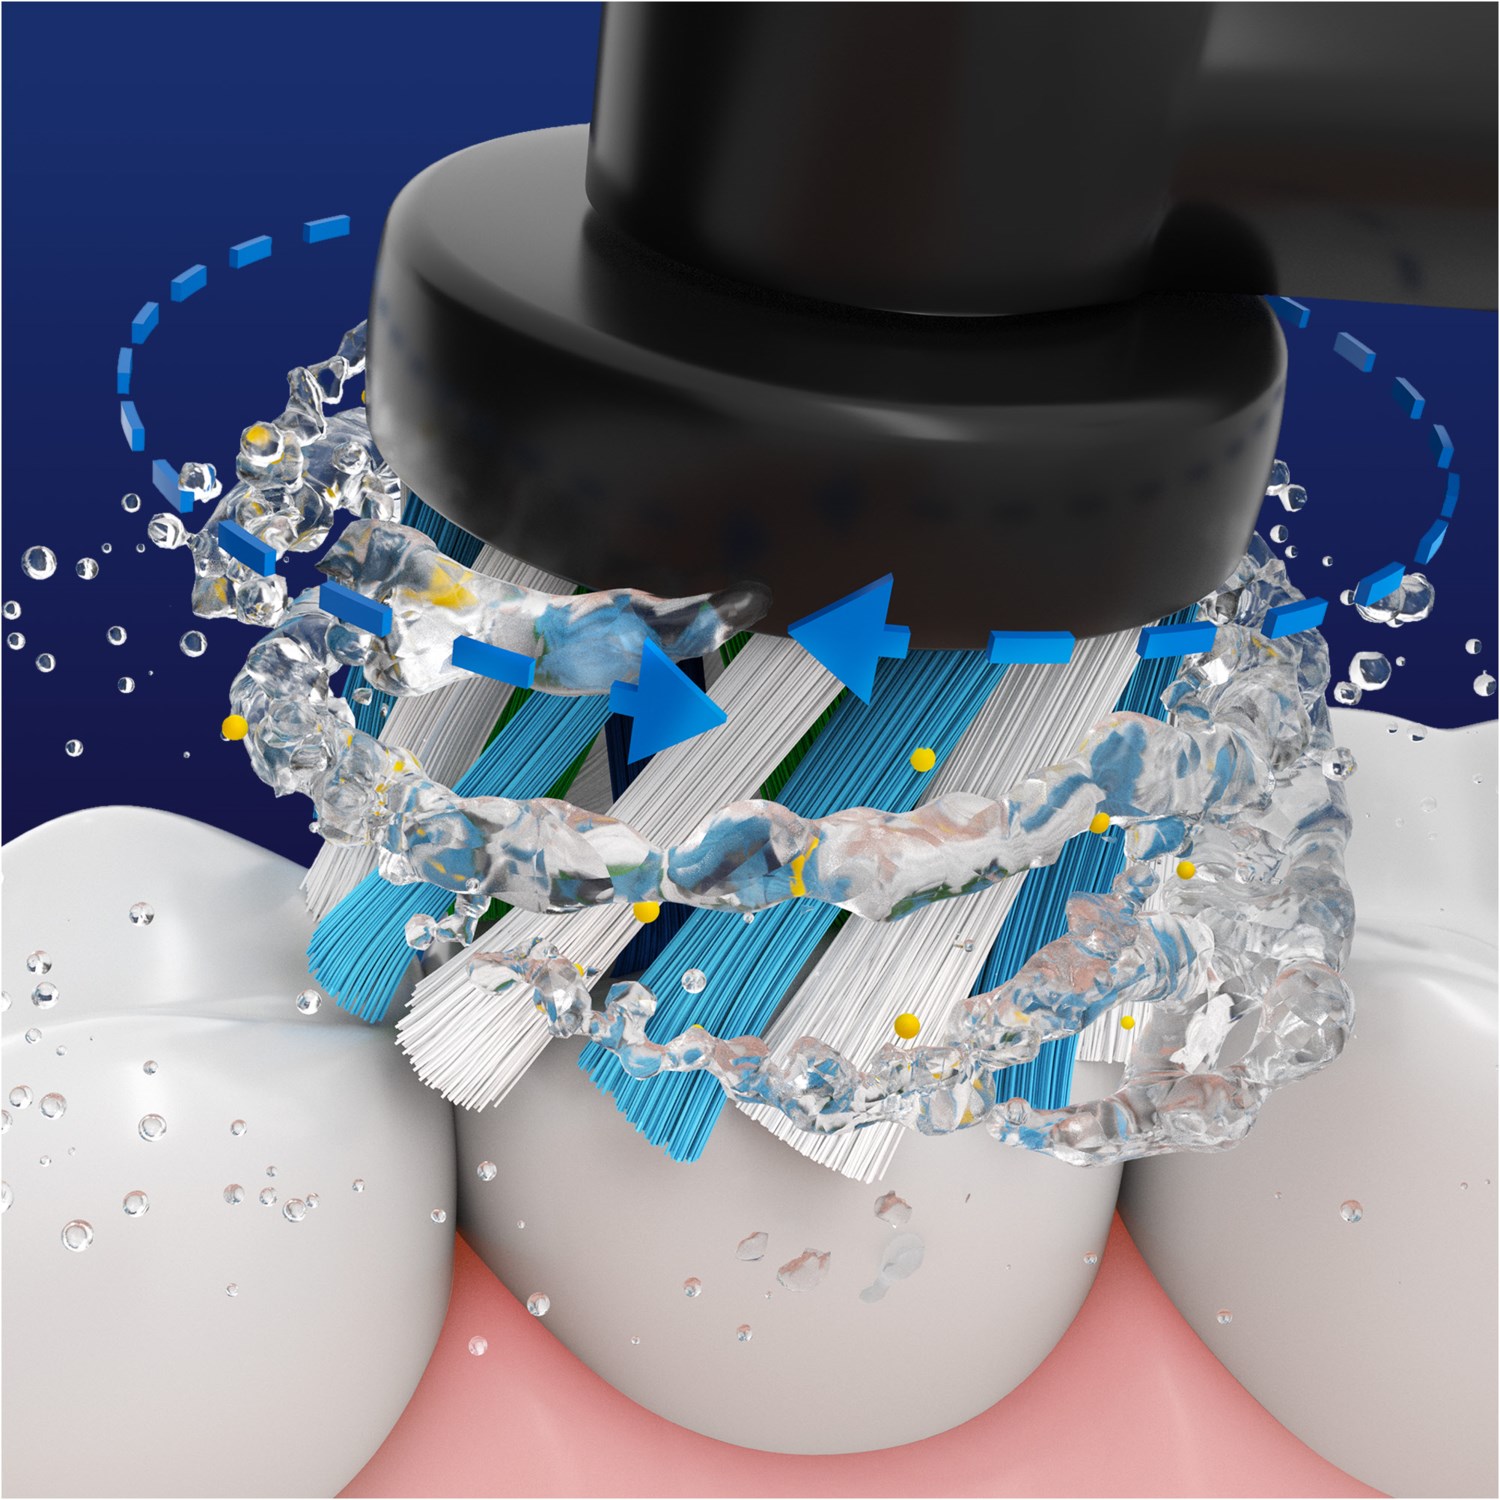 Braun Oral-B Genius X elektrische Zahnbürste mit Reise-Ladeetui mitternachtsschwarz